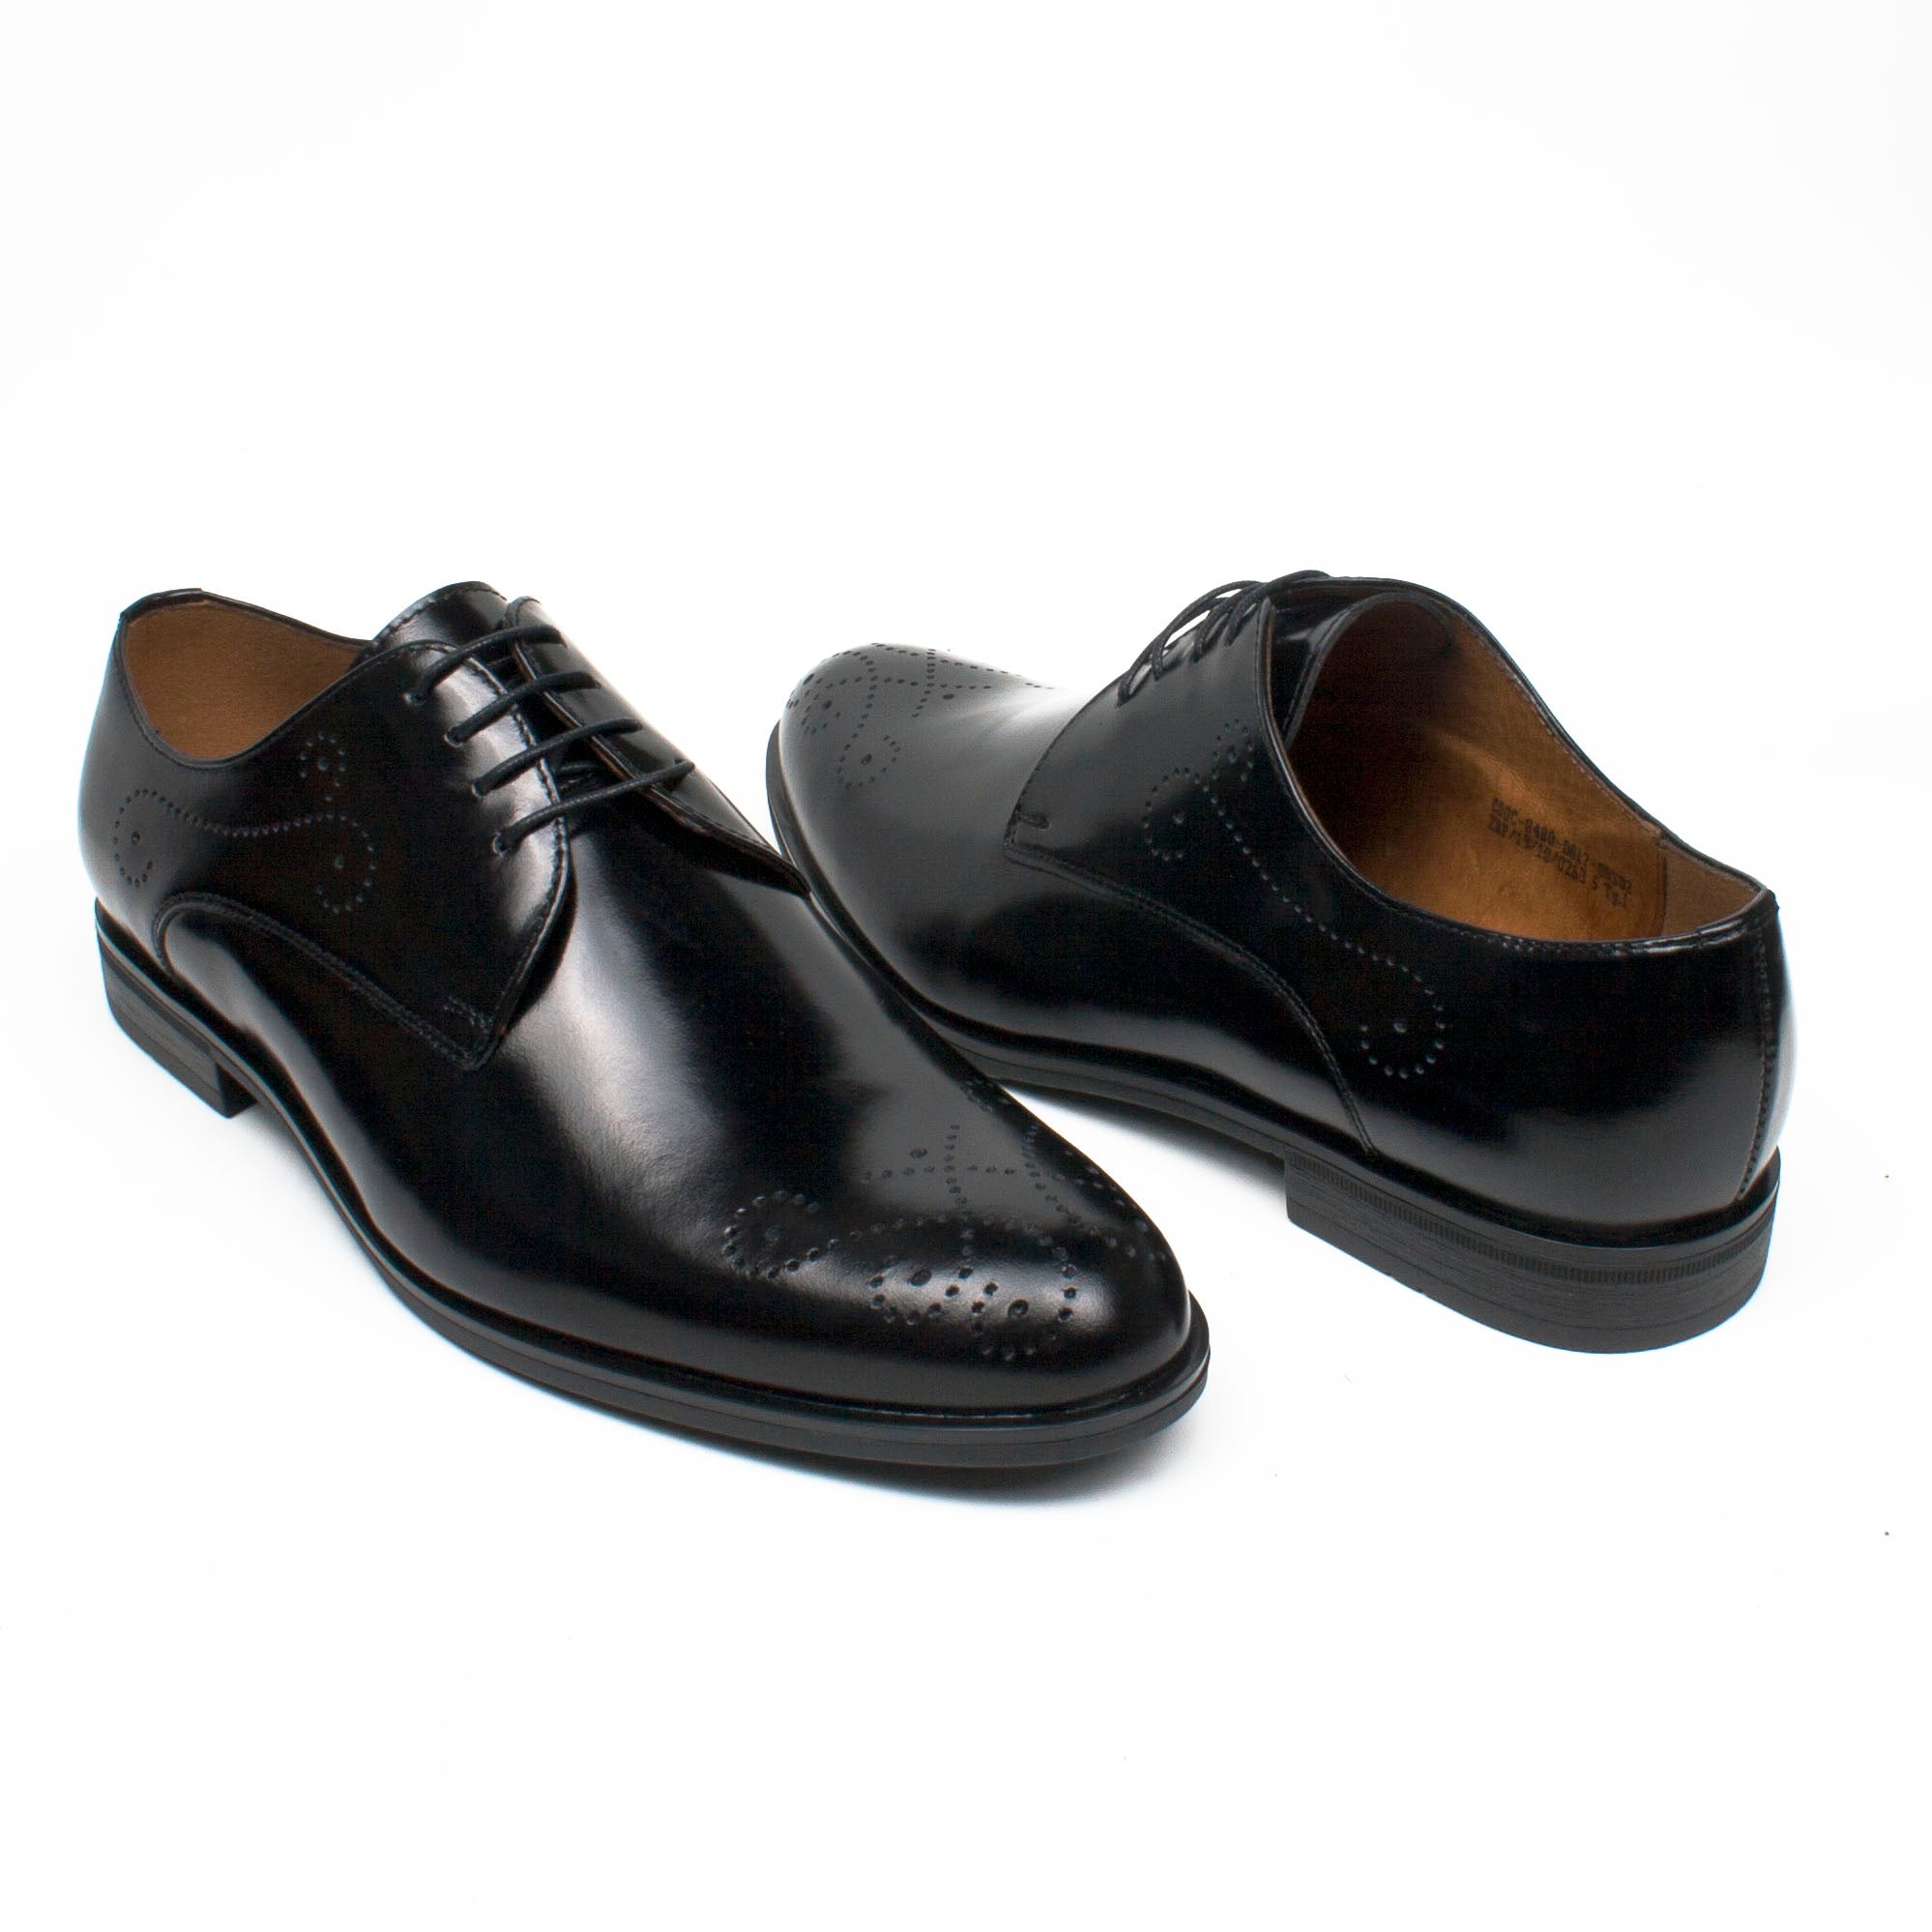 Conhpol Pantofi barbati negru IB0577-NG